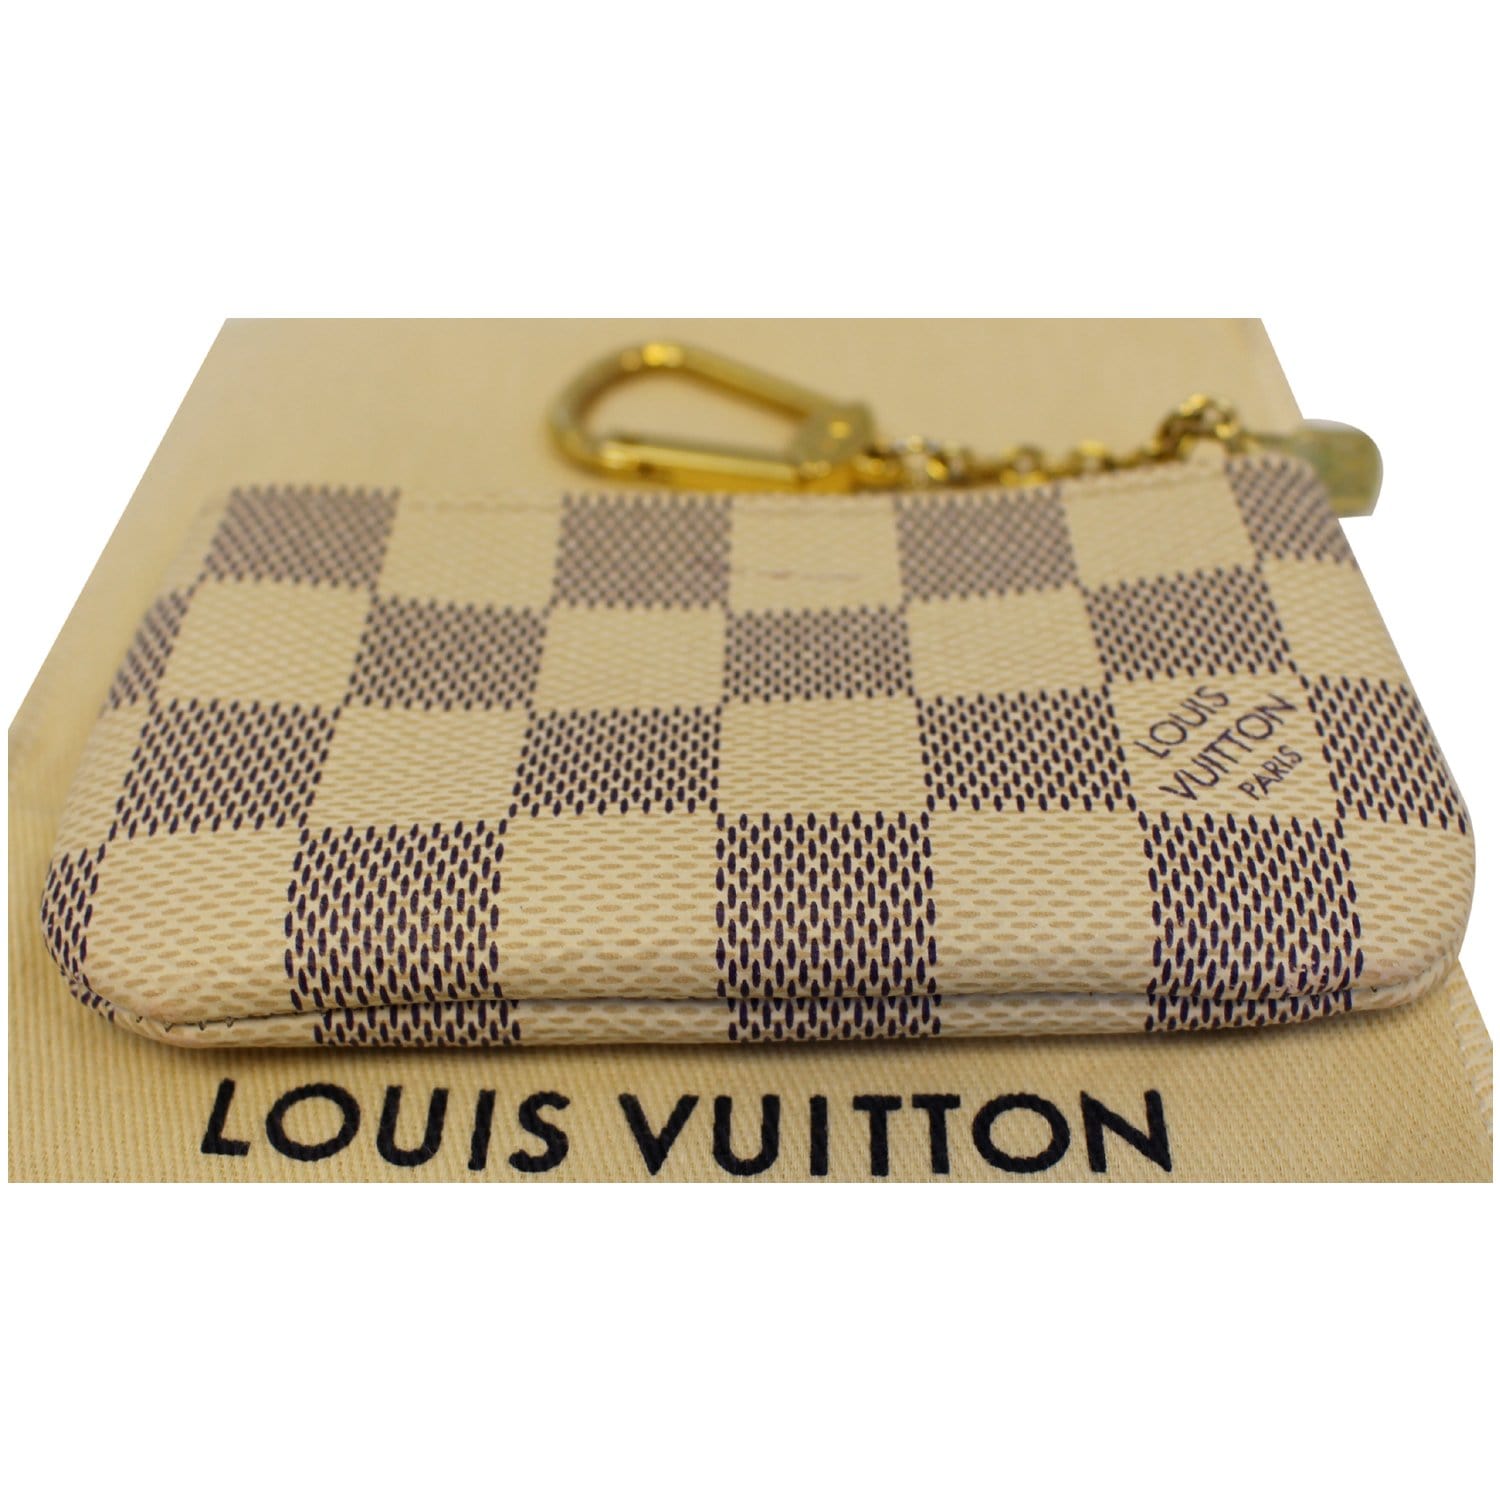 Louis Vuitton Clé de Maison Key Chain Collection